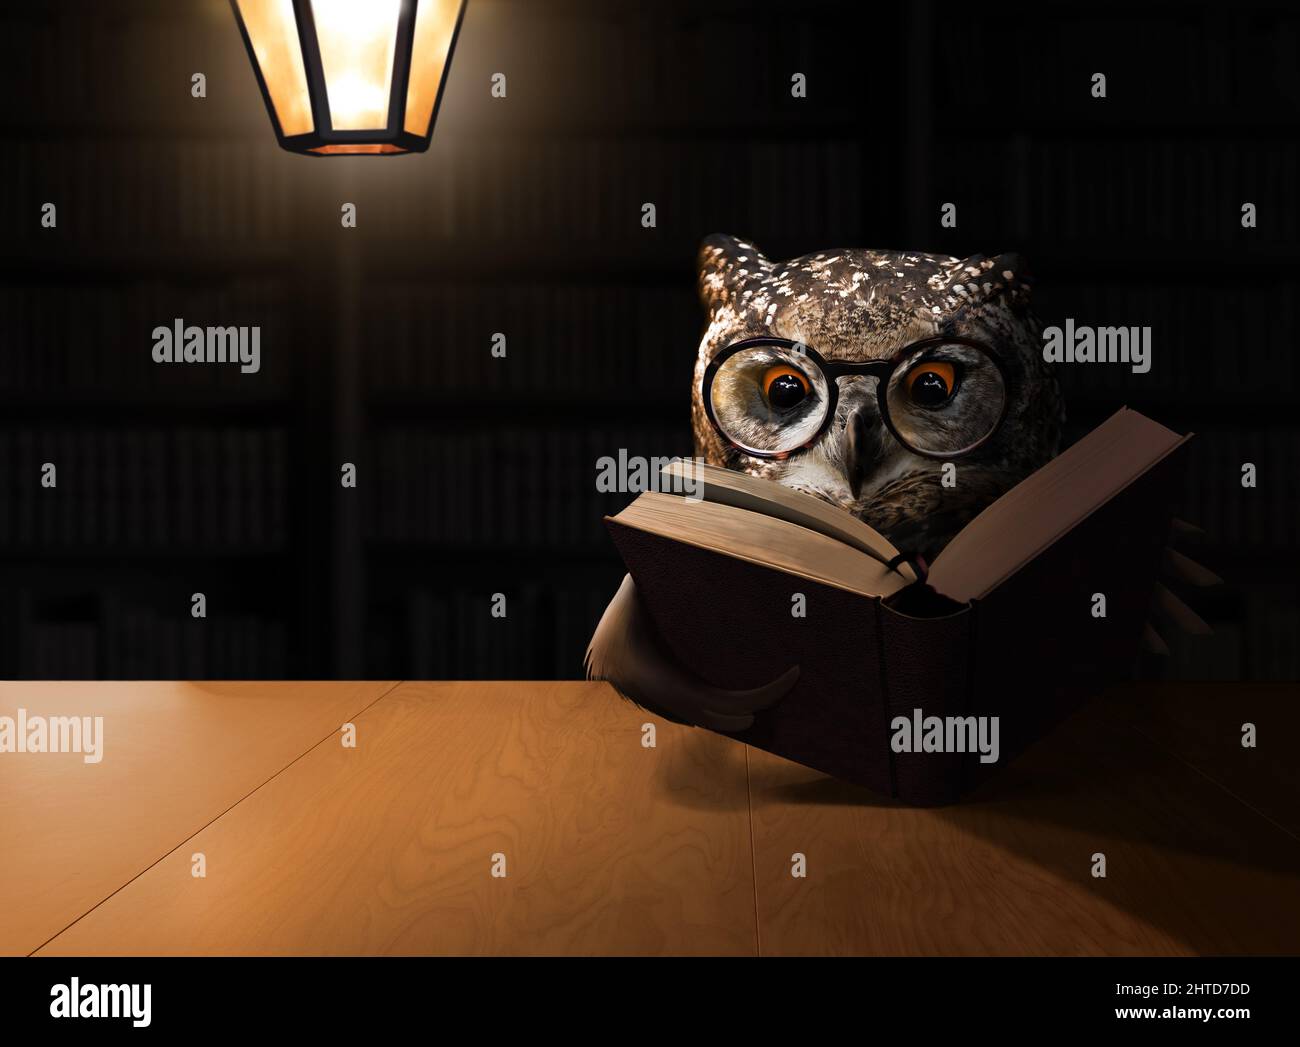 Owl leggere un libro in una stanza buia con lampada. Tema concettuale dell'istruzione. Foto Stock